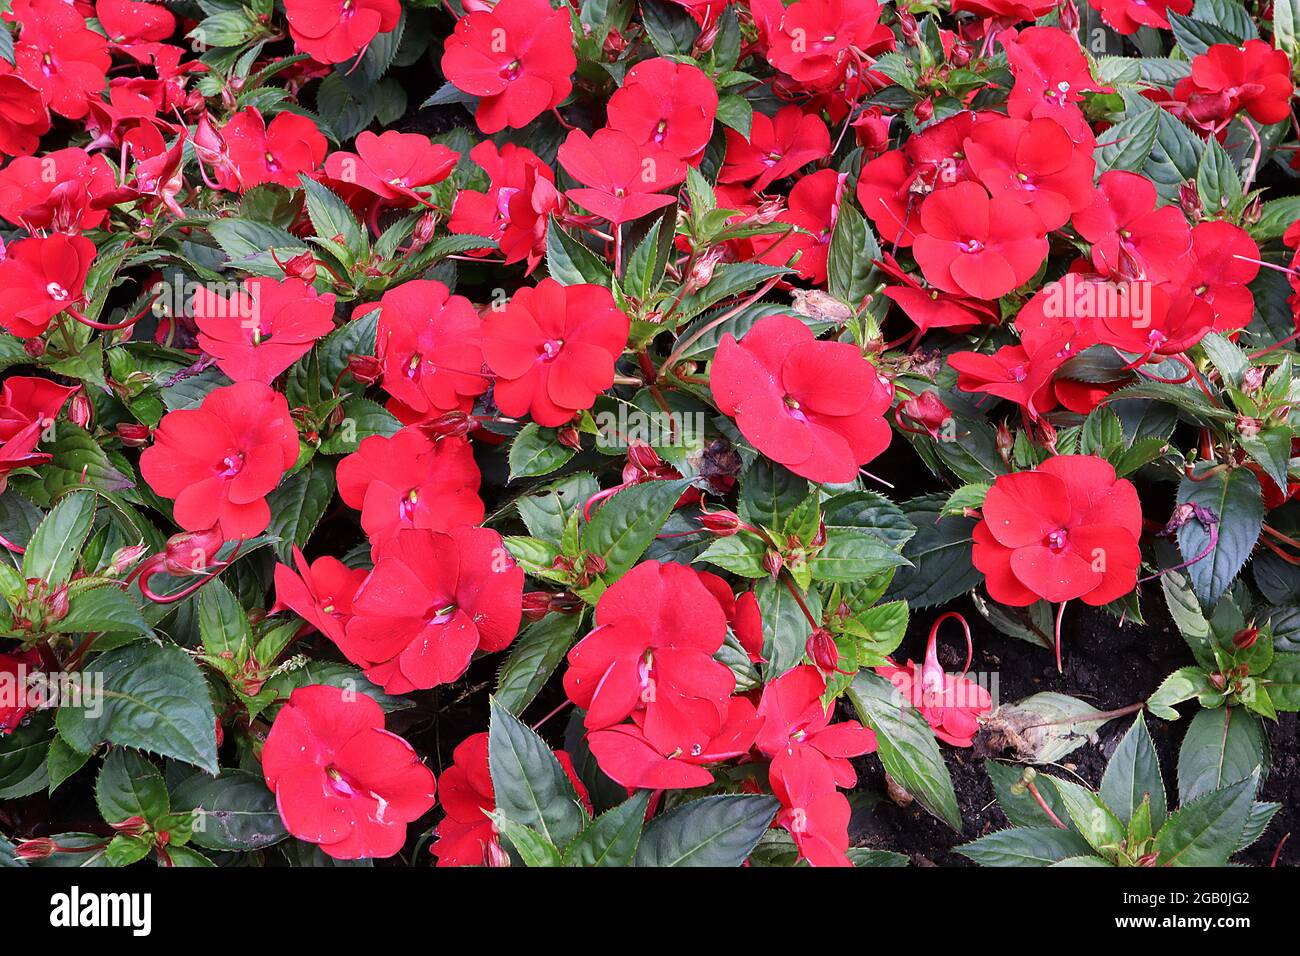 Impatiens hawkerii ‘Super Sonic Red’ Nouvelle Guinée impatiens Red - fleurs rouges plates et feuilles dentelées vert foncé, juin, Angleterre, Royaume-Uni Banque D'Images